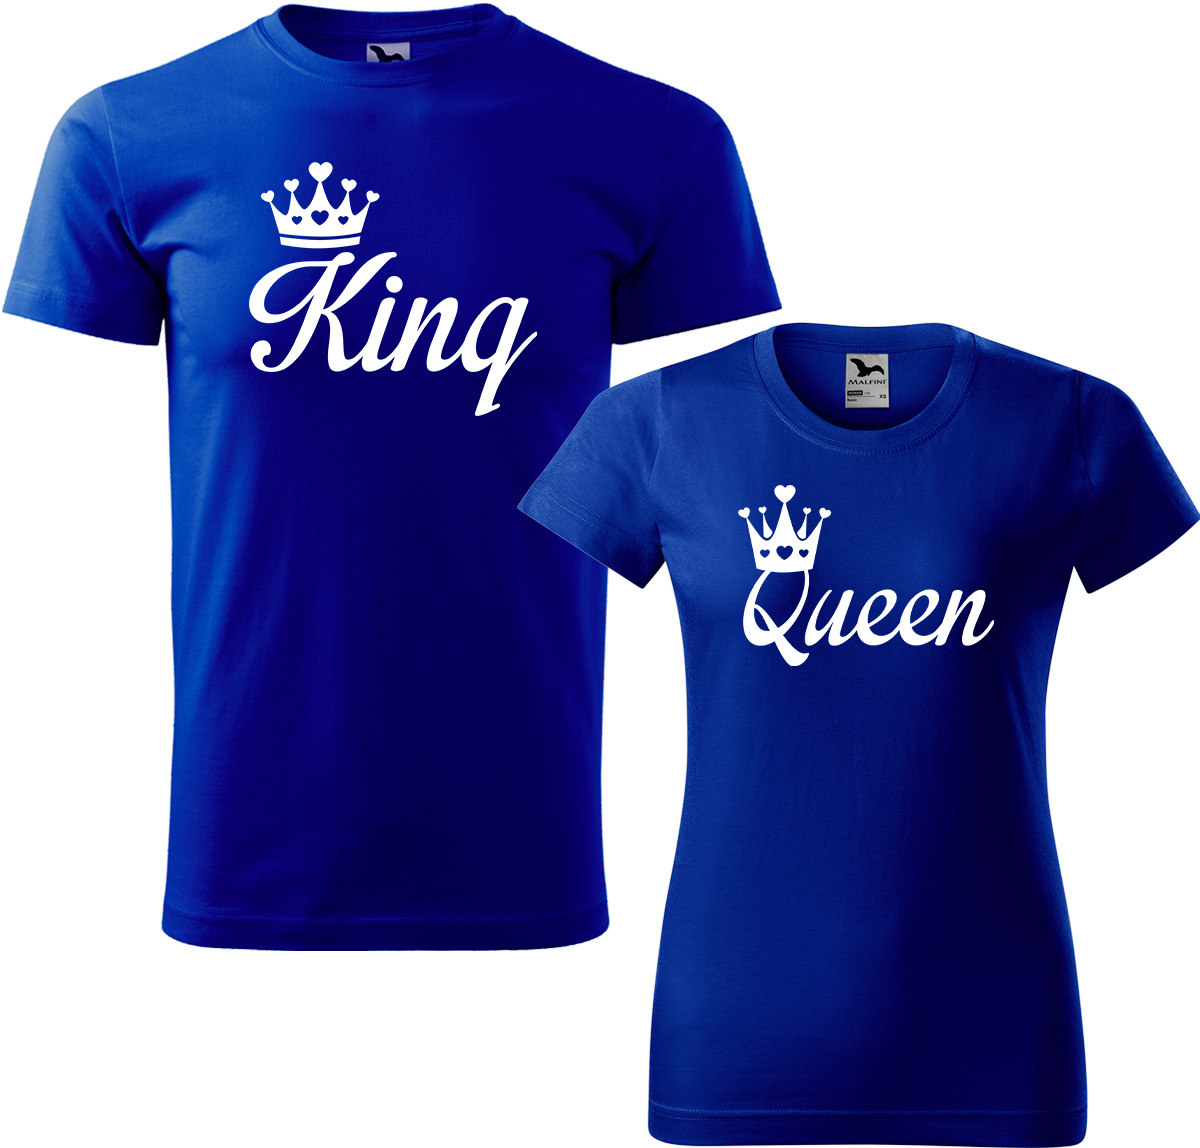 Trička pro páry - King a queen Barva: Královská modrá (05), Velikost dámské tričko: S, Velikost pánské tričko: 3XL